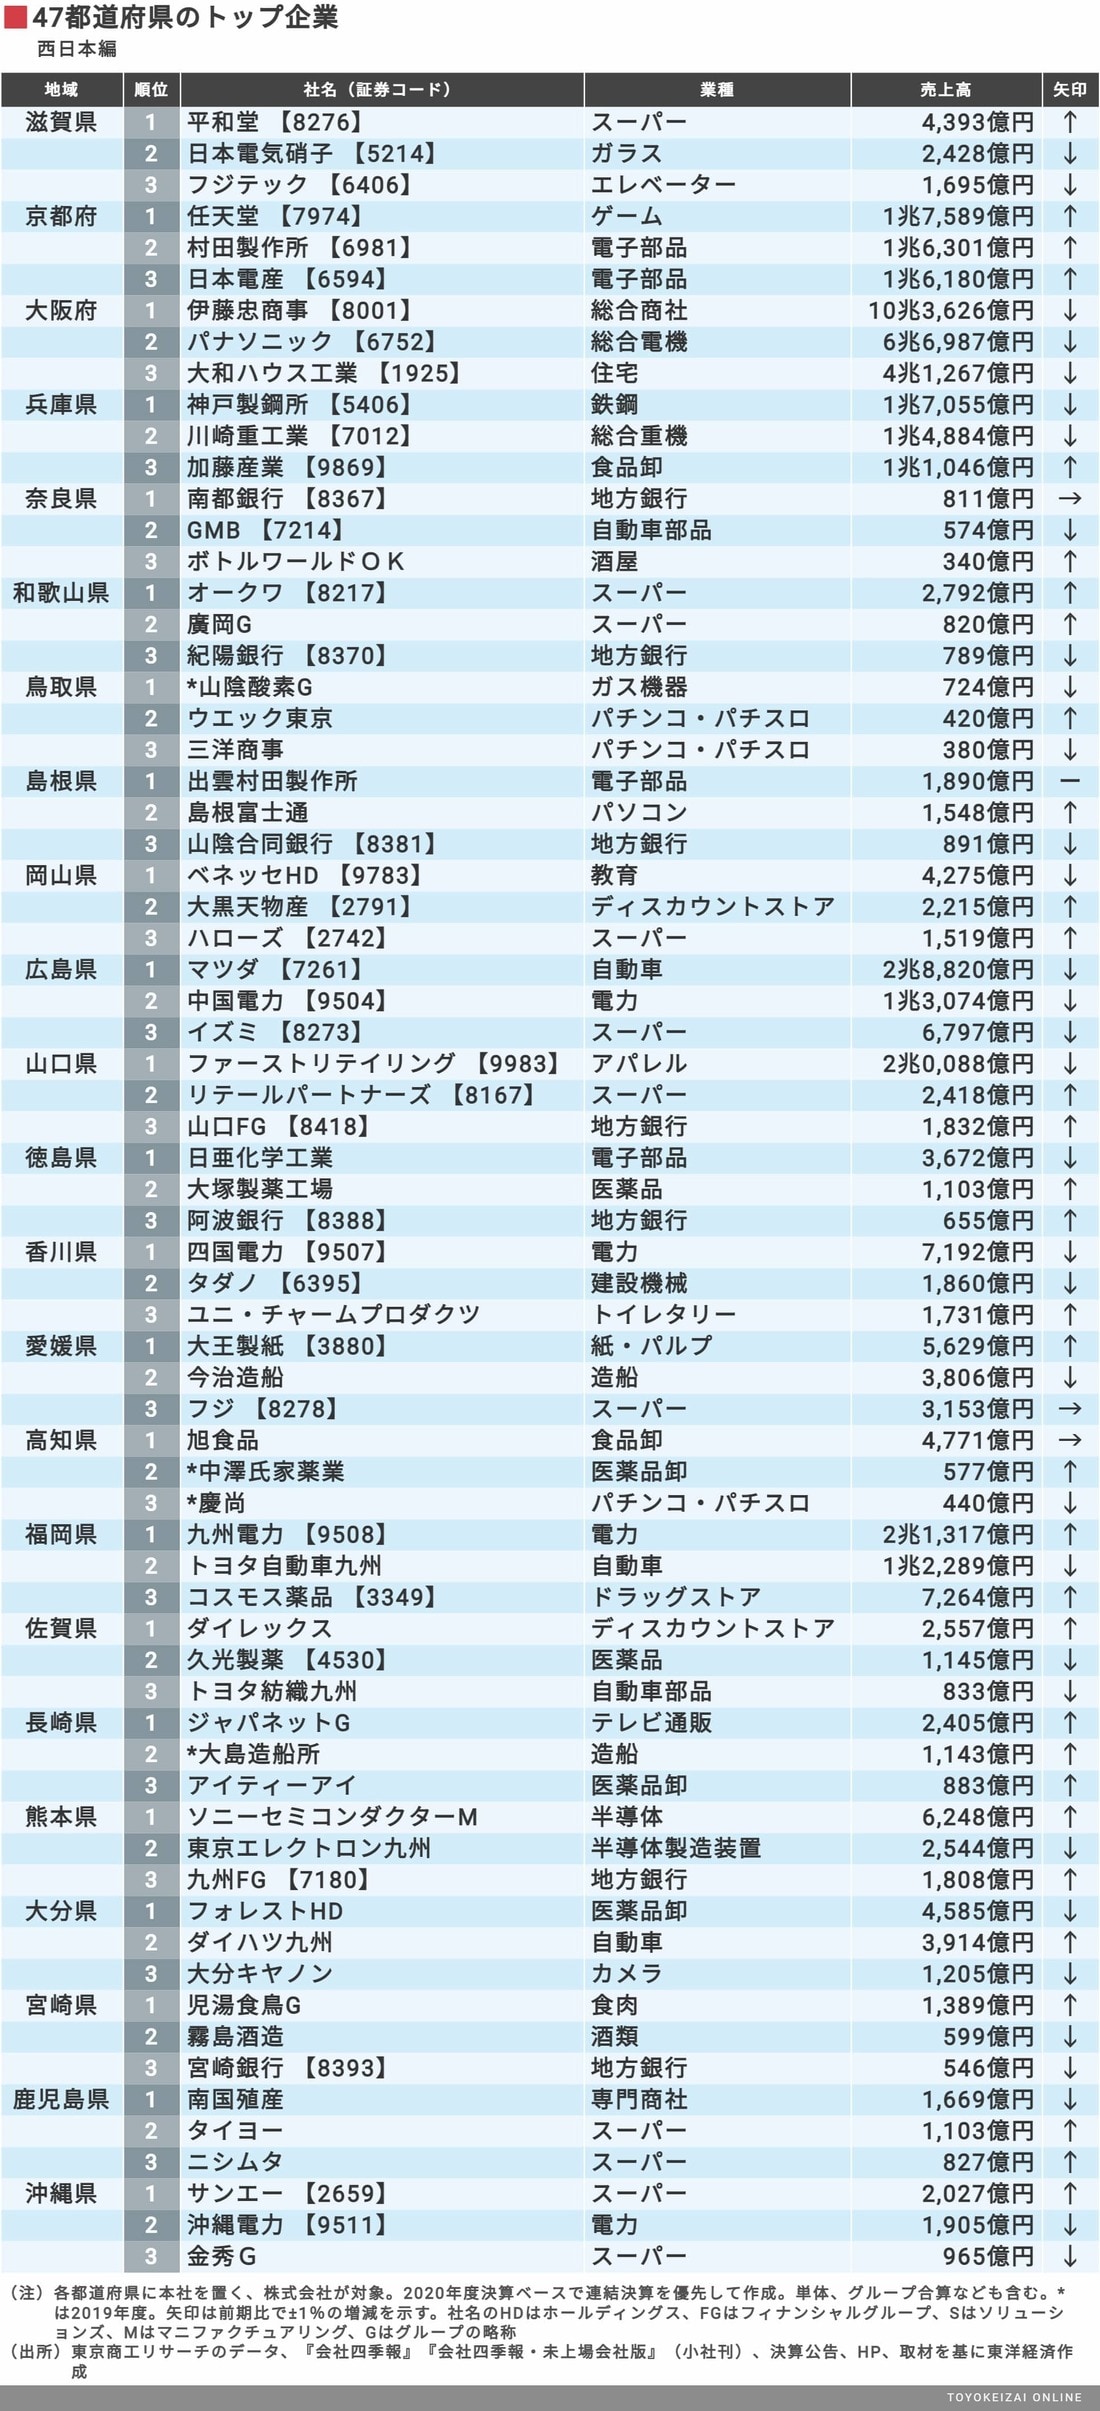 業界地図 独自集計 47都道府県トップ3企業 ランキング 会社四季報オンライン